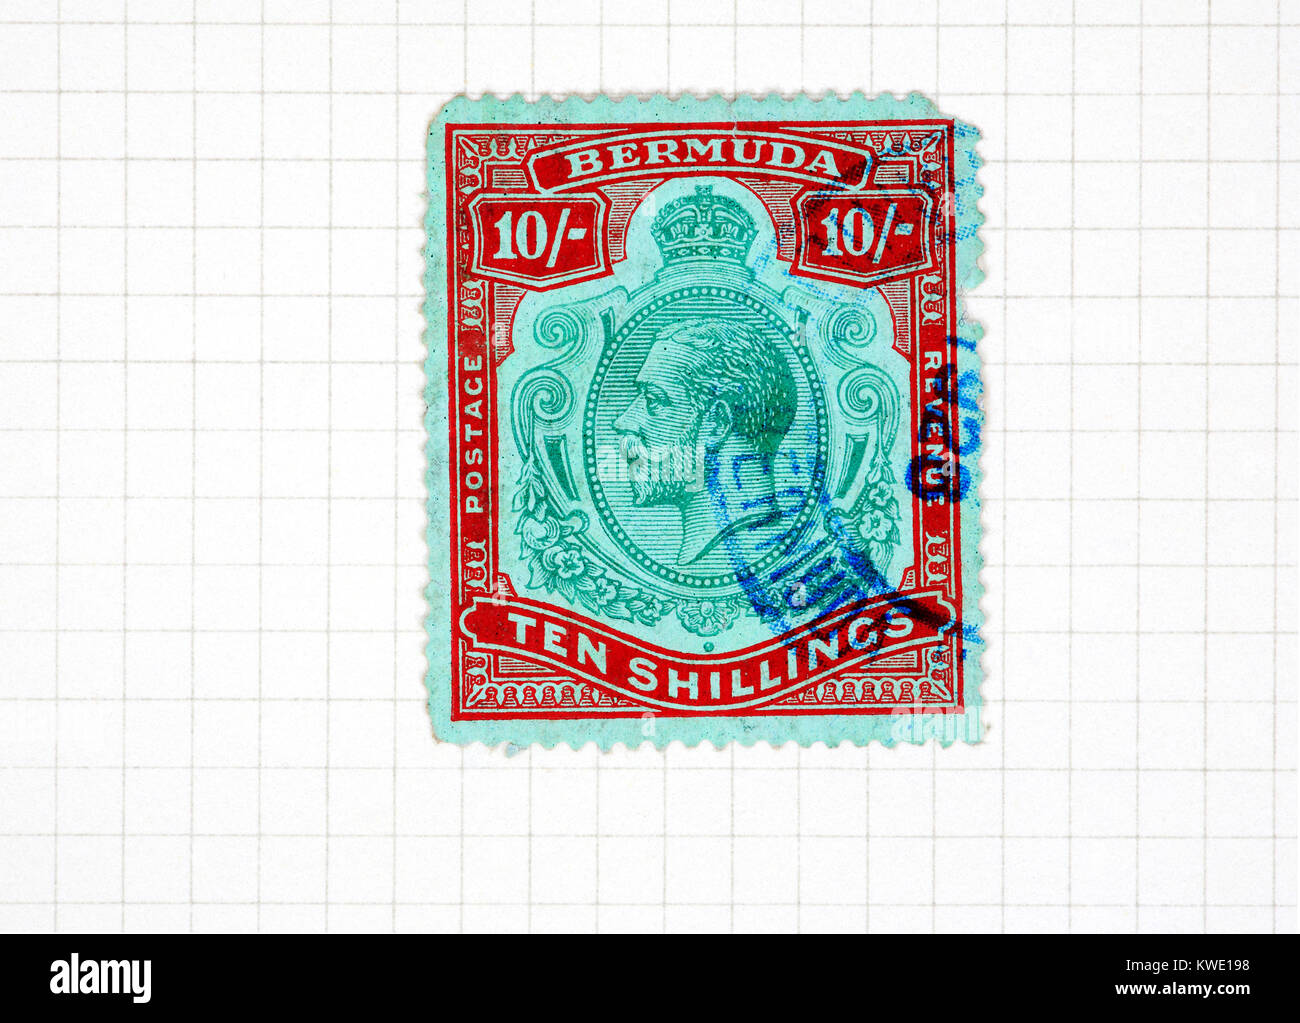 Ein König George V Herrschaft Bermuda zehn Schilling Briefmarke aus einer Briefmarkensammlung album Seite verwendet. Stockfoto